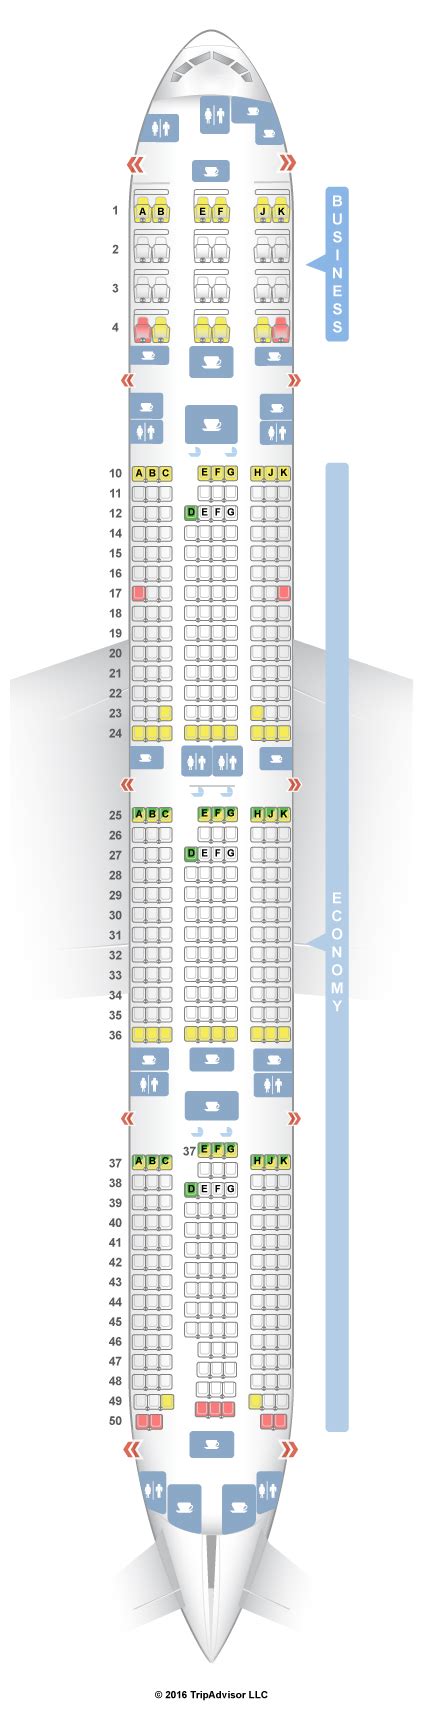 qatar airways seat map boeing 777-300er